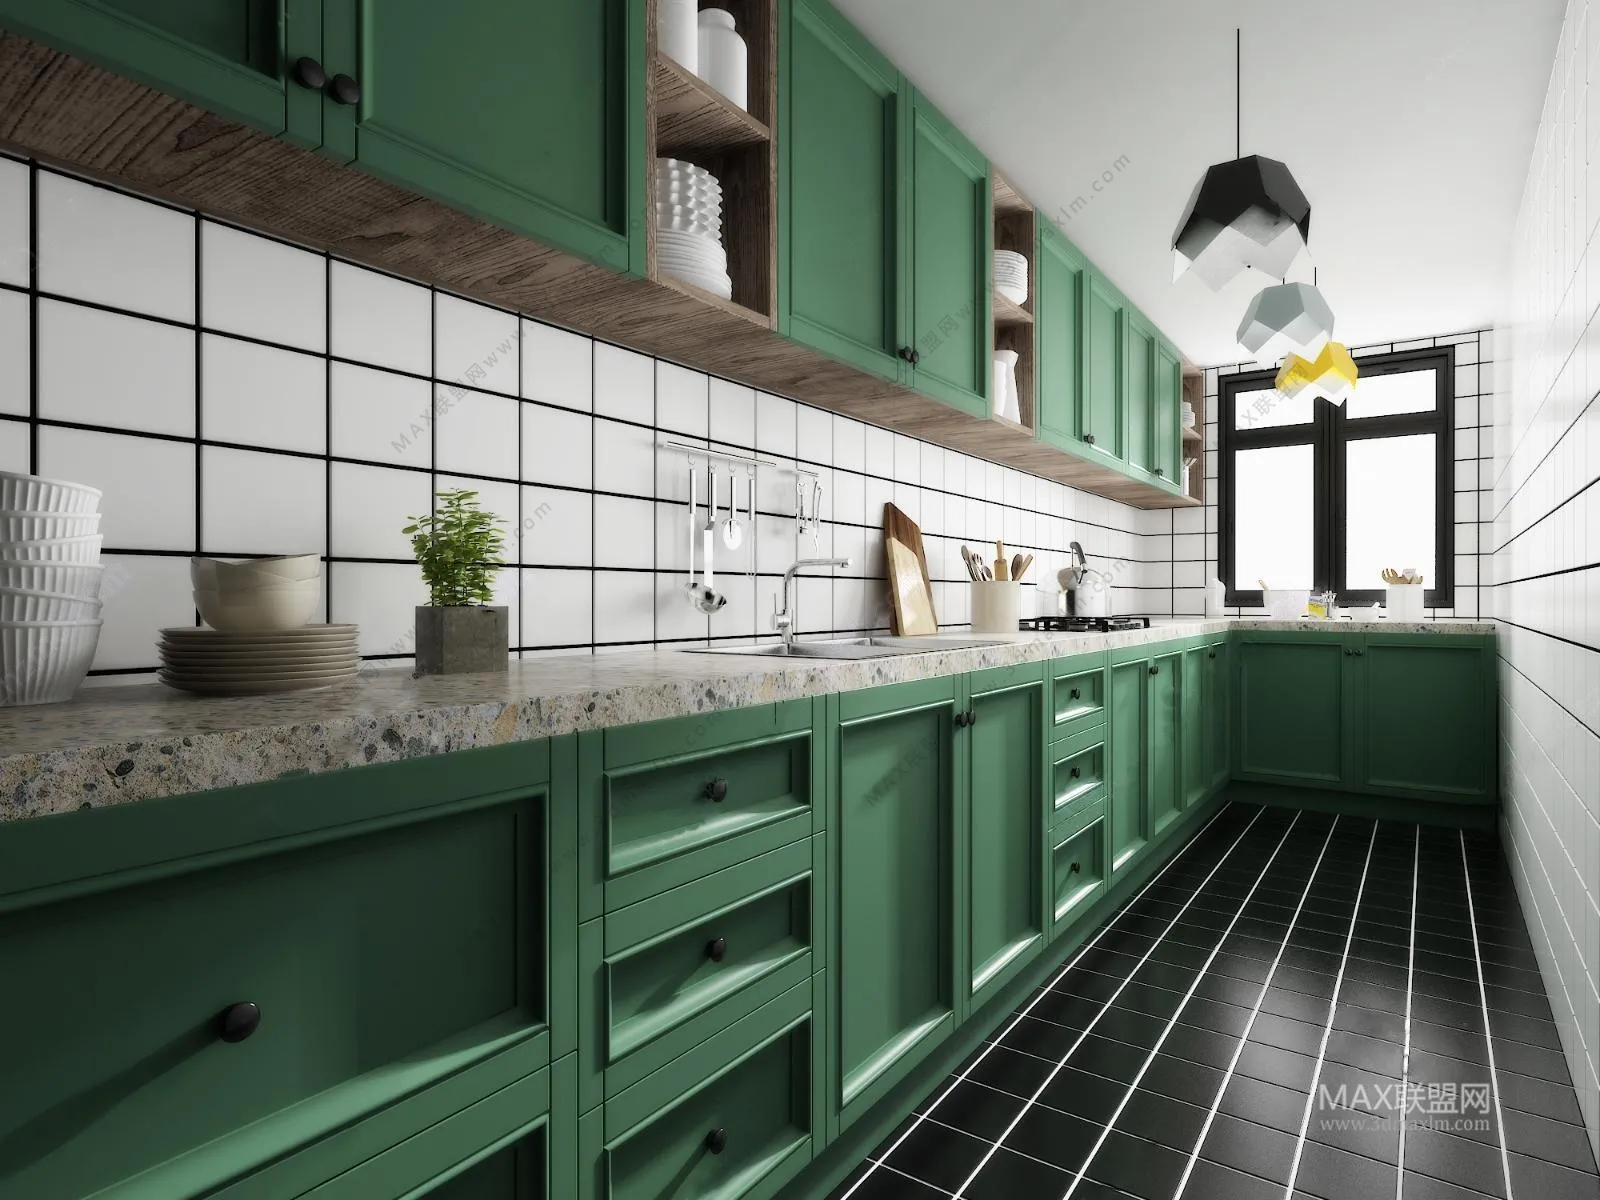 Kitchen – Interior Design – American Design – 001